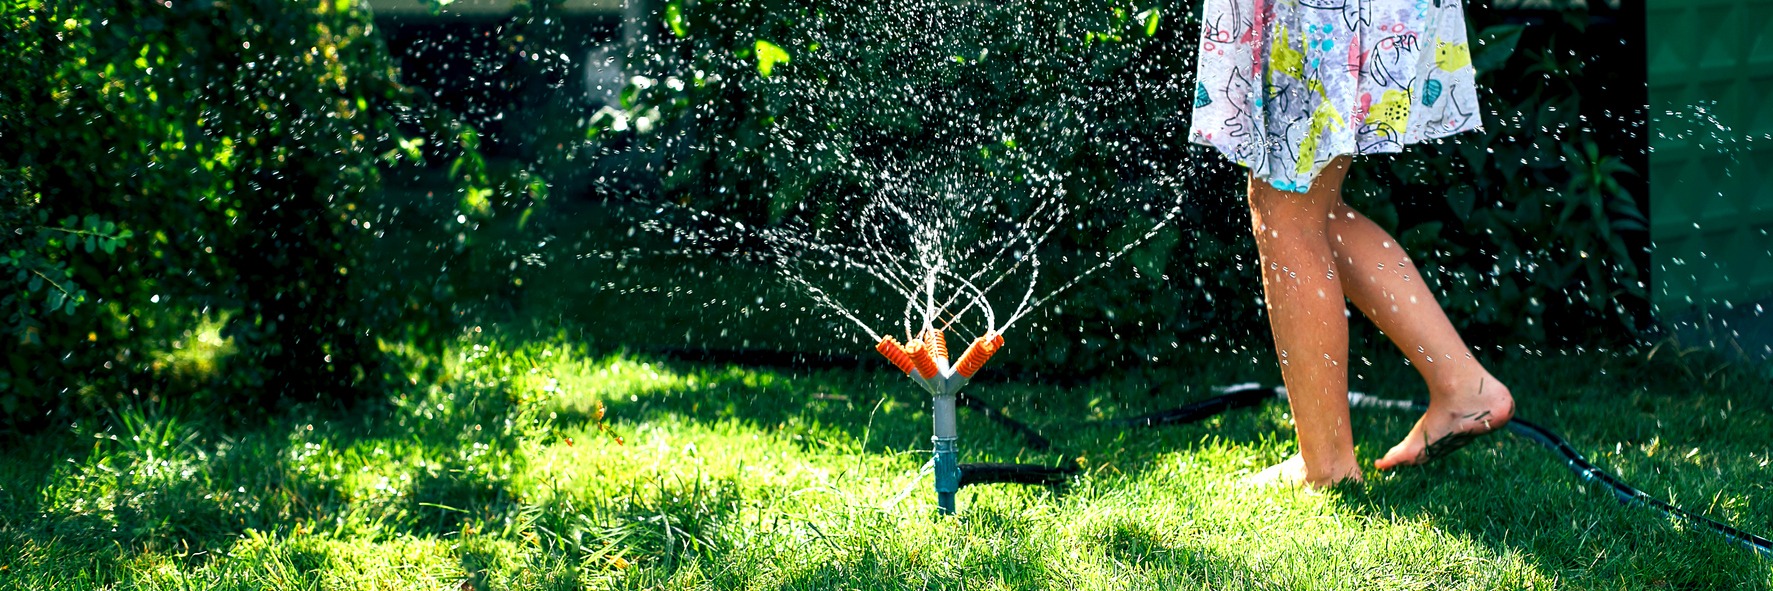 DIY Sprinkler For Some Summer Fun 